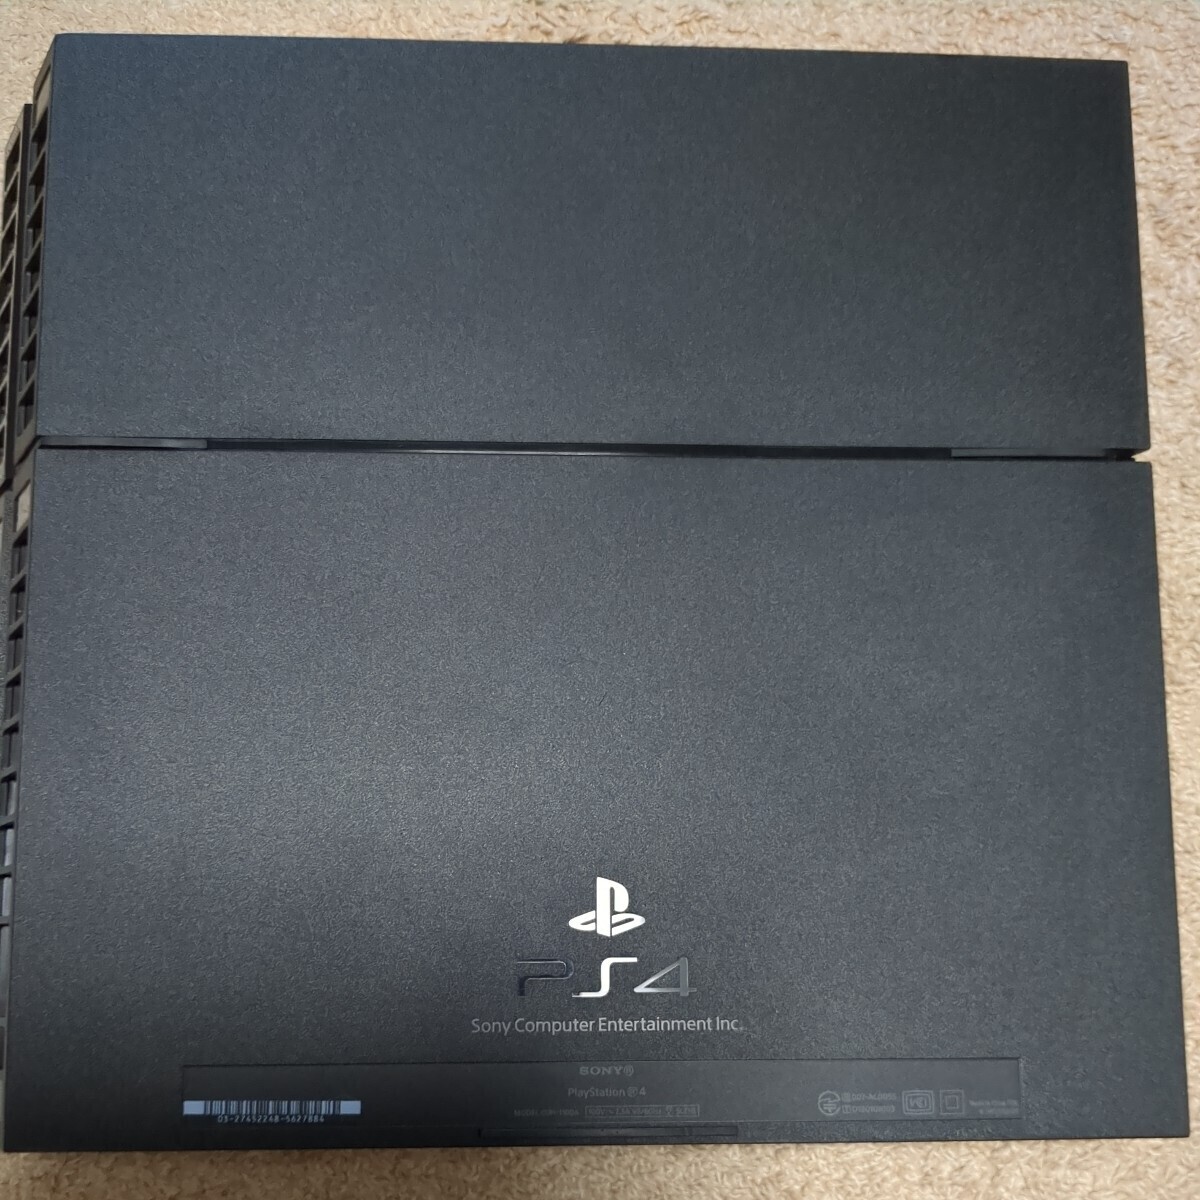  Sony PlayStation 4 used CUH-1100A black 500GB